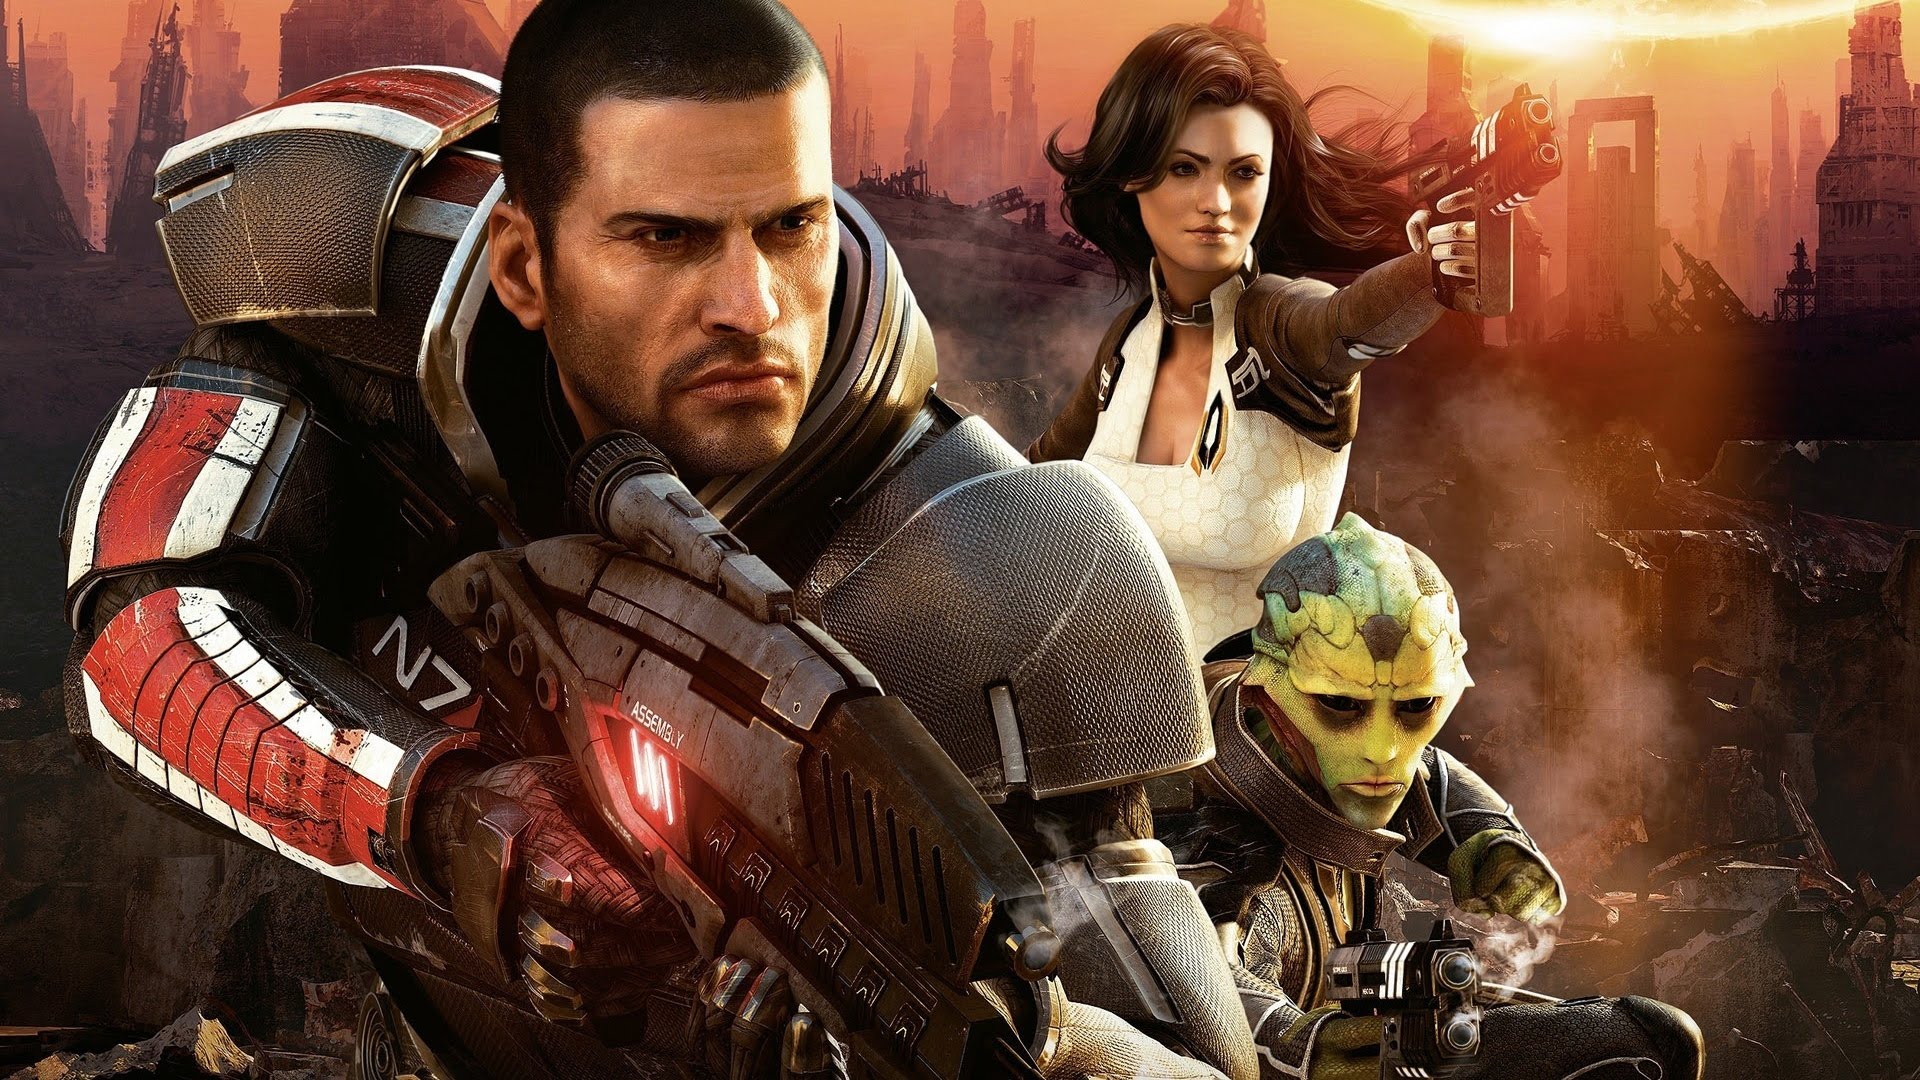 Remaster trilogije Mass Effect trenutno je planiran za oktobar, ali bi mogao biti odložen – glasine